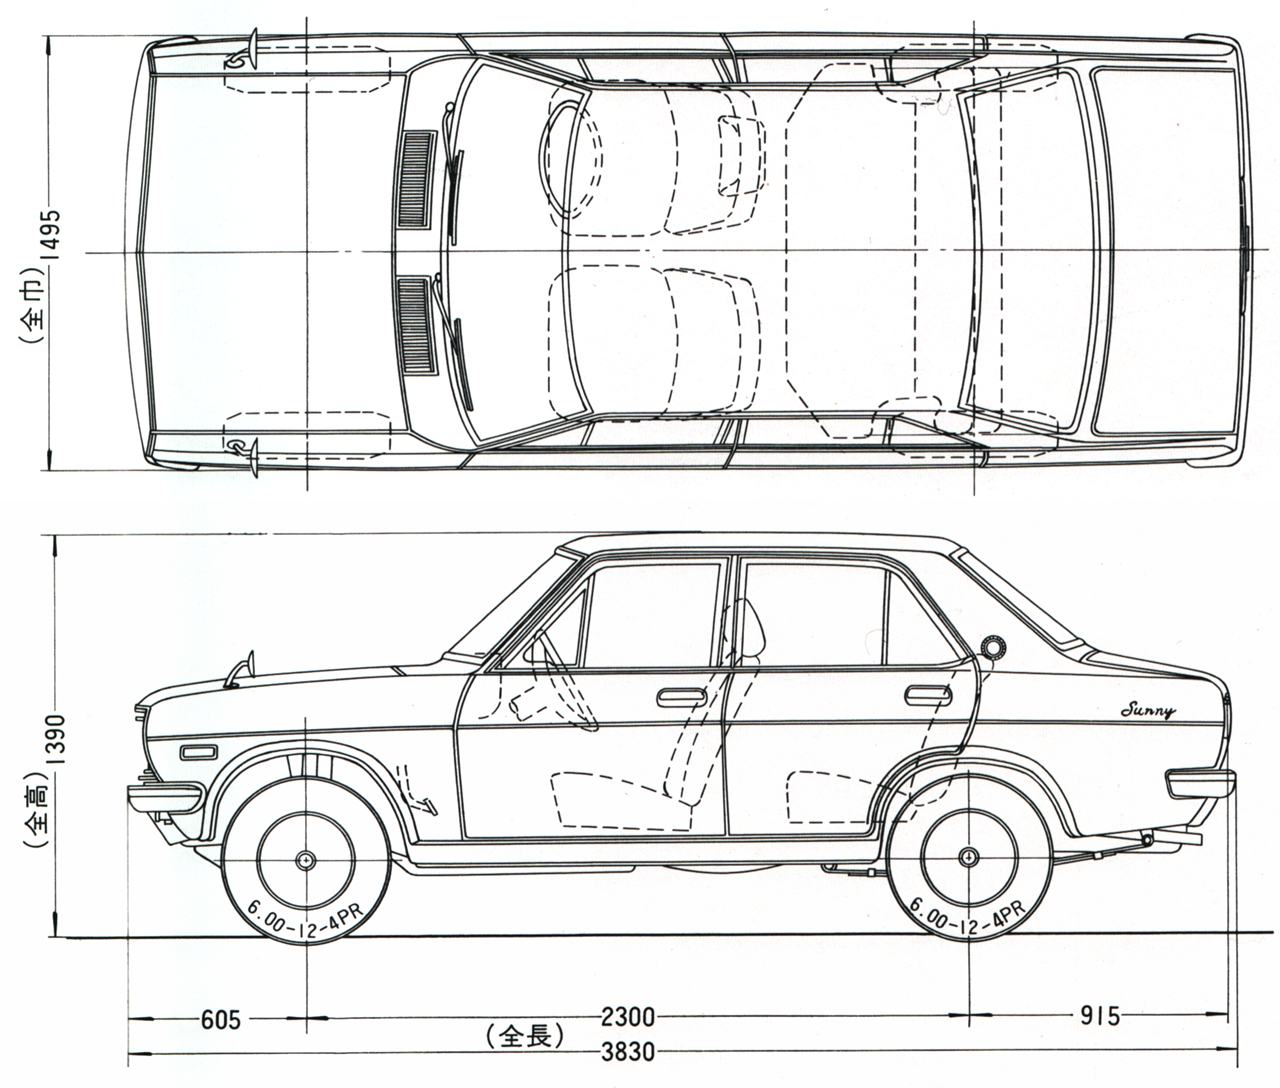 Datsun 1200 blueprint